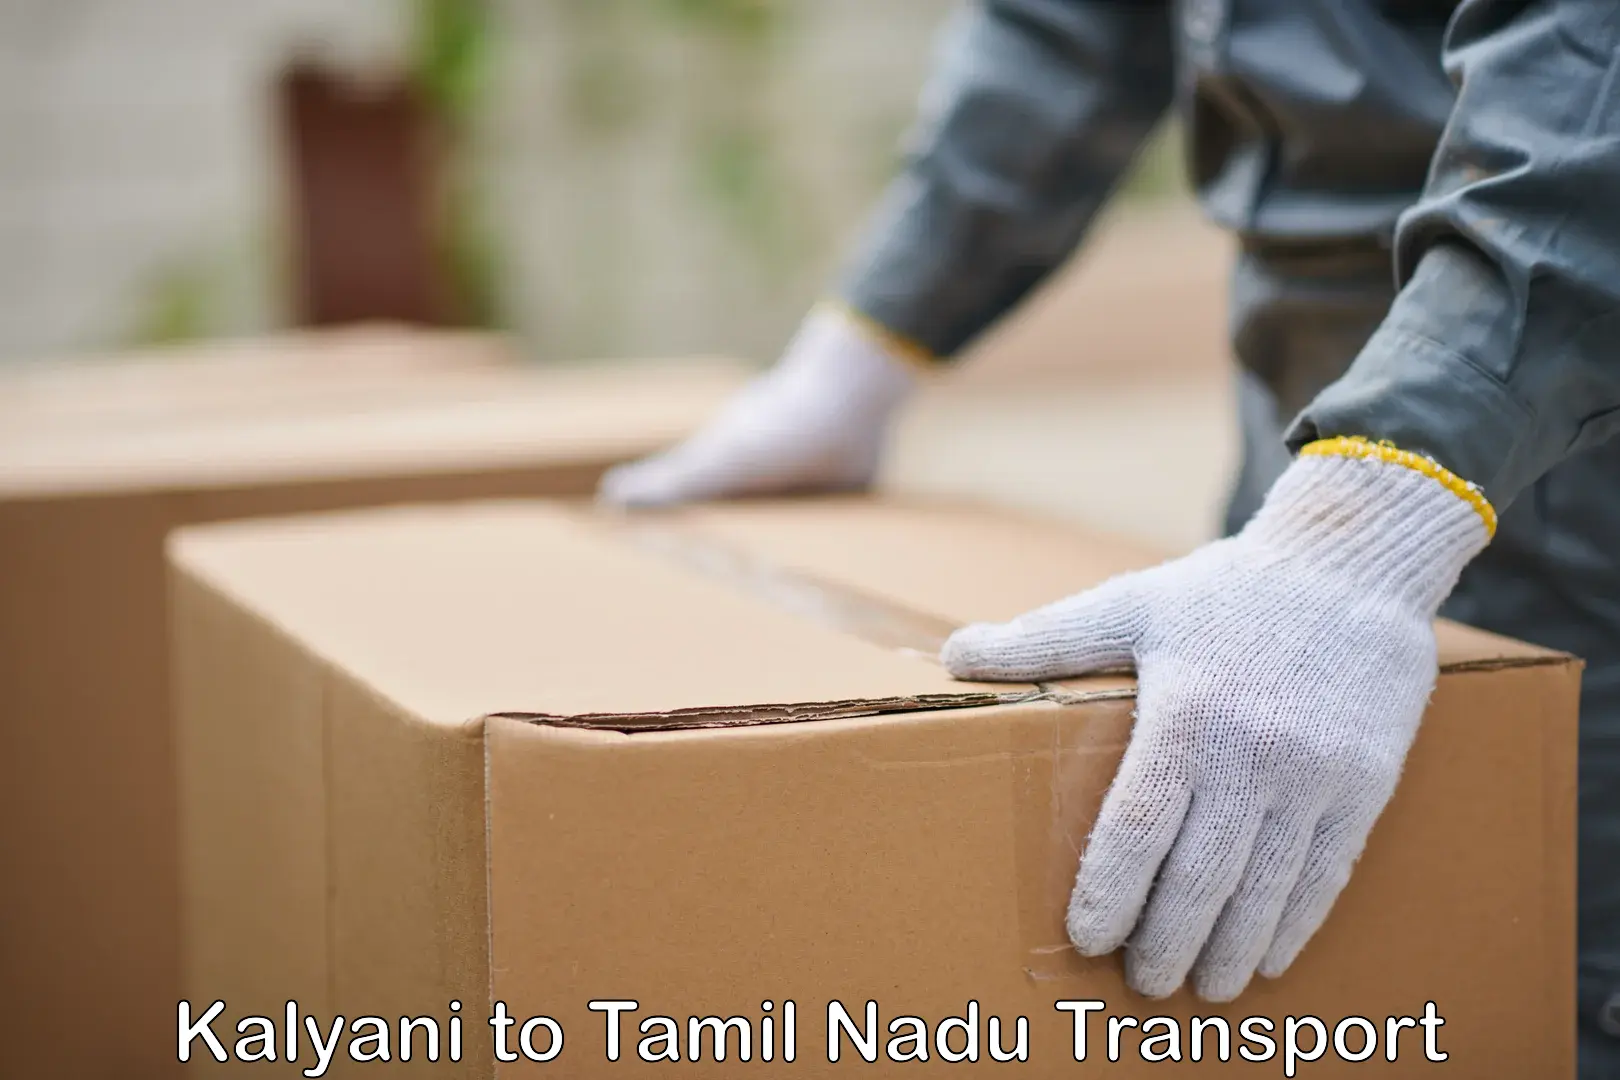 Cargo transportation services Kalyani to Chennai